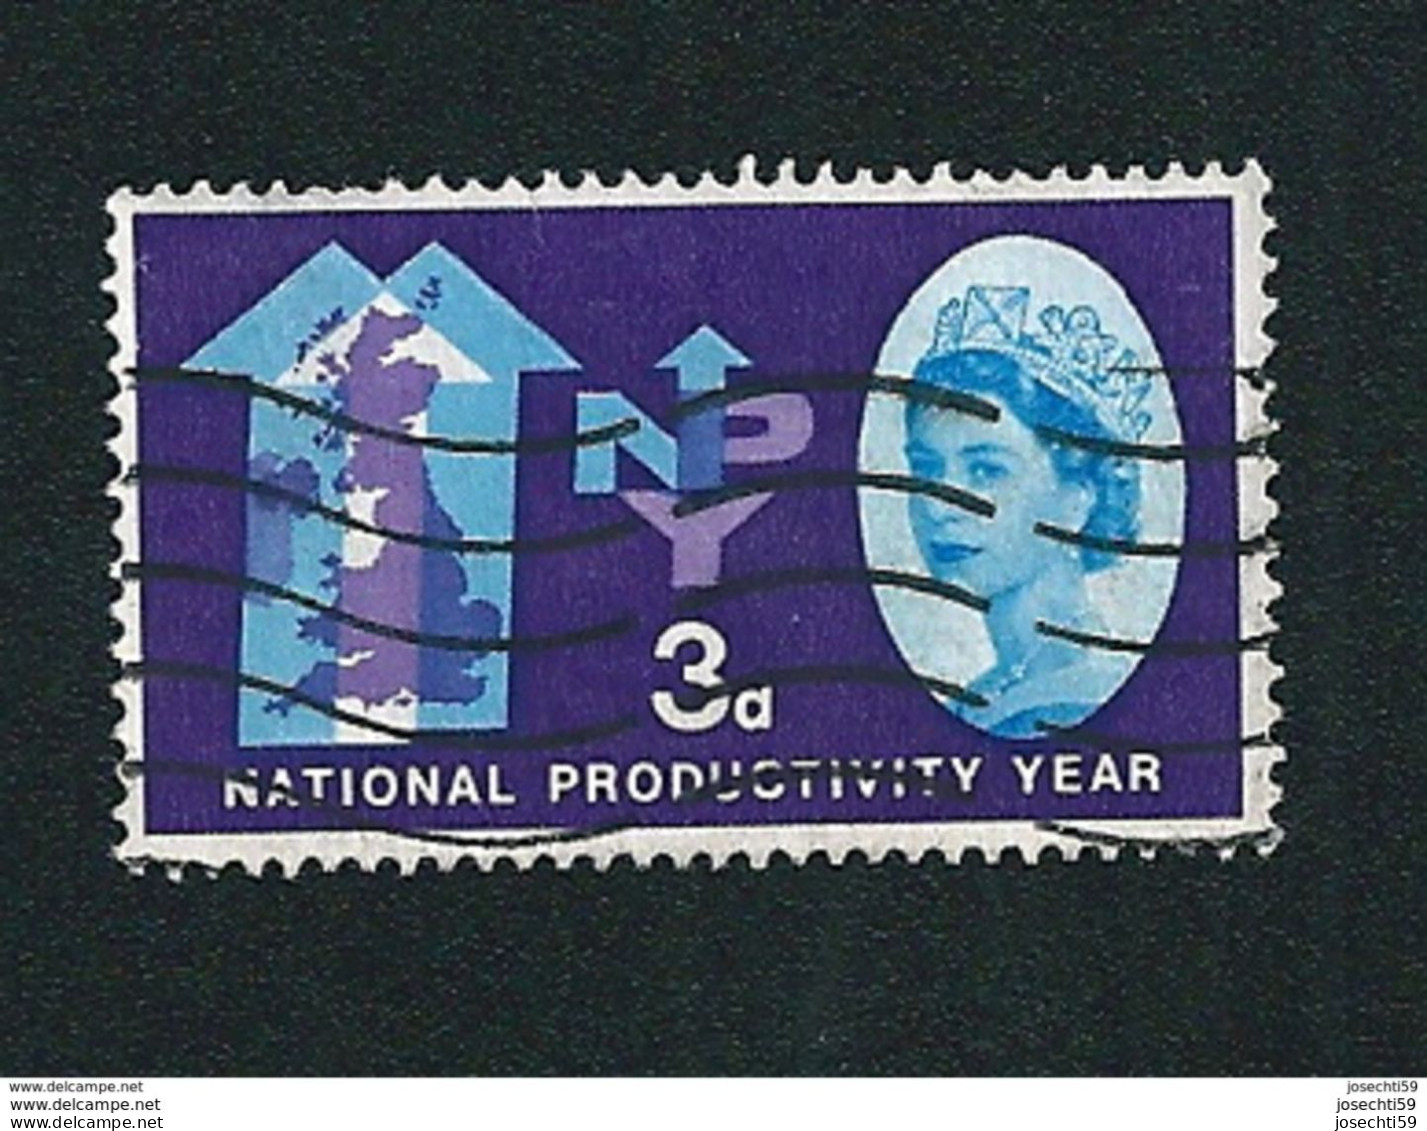 N° 368  Elisabeth II  Timbre GRANDE BRETAGNE Année De La Productivité Nationale 3 Stamp Royaume Uni GB - Usati